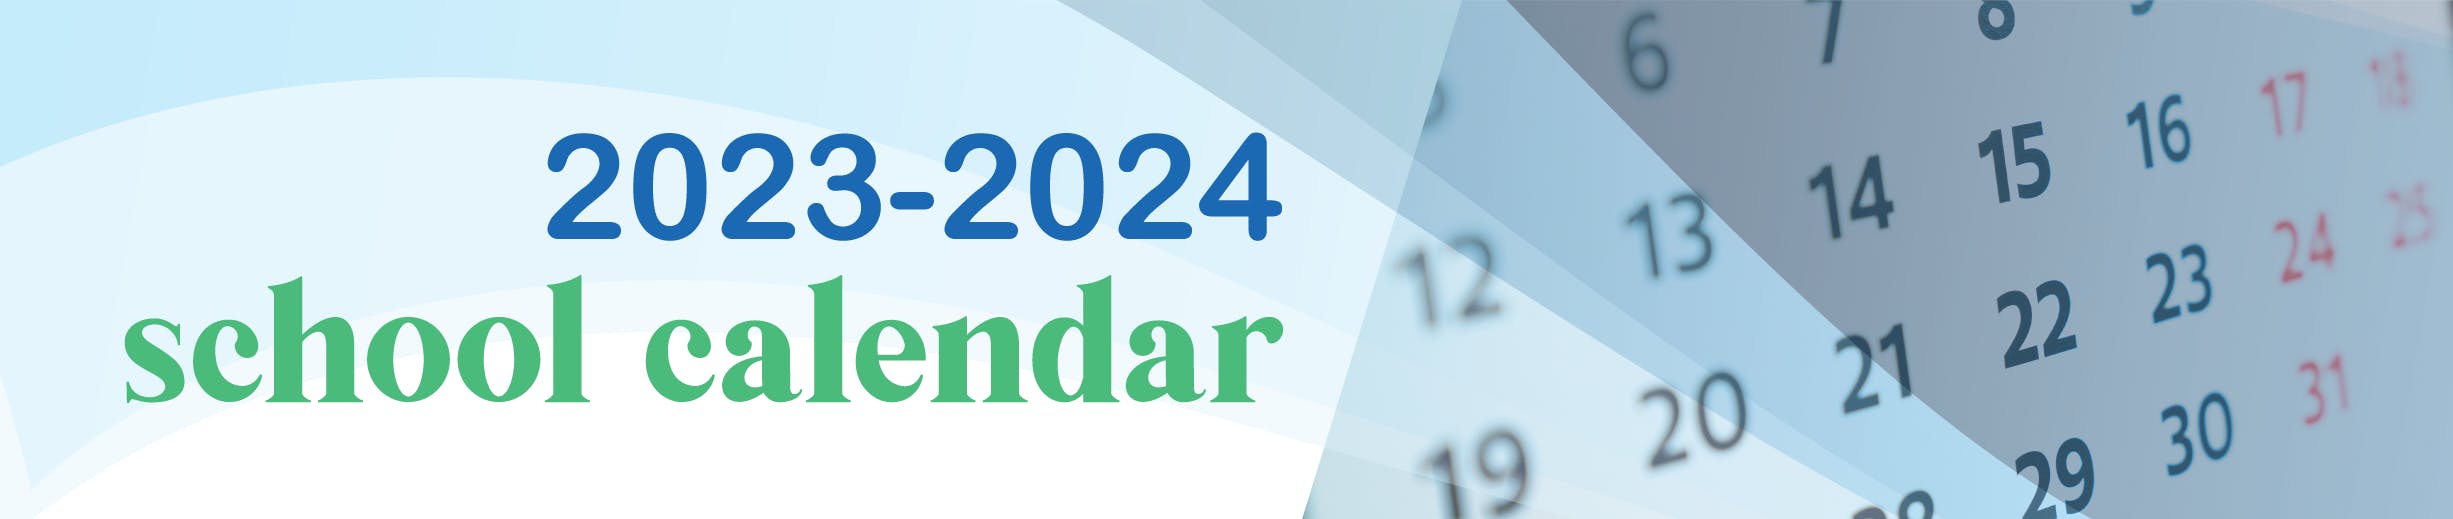 2021-2022 school calendar banner